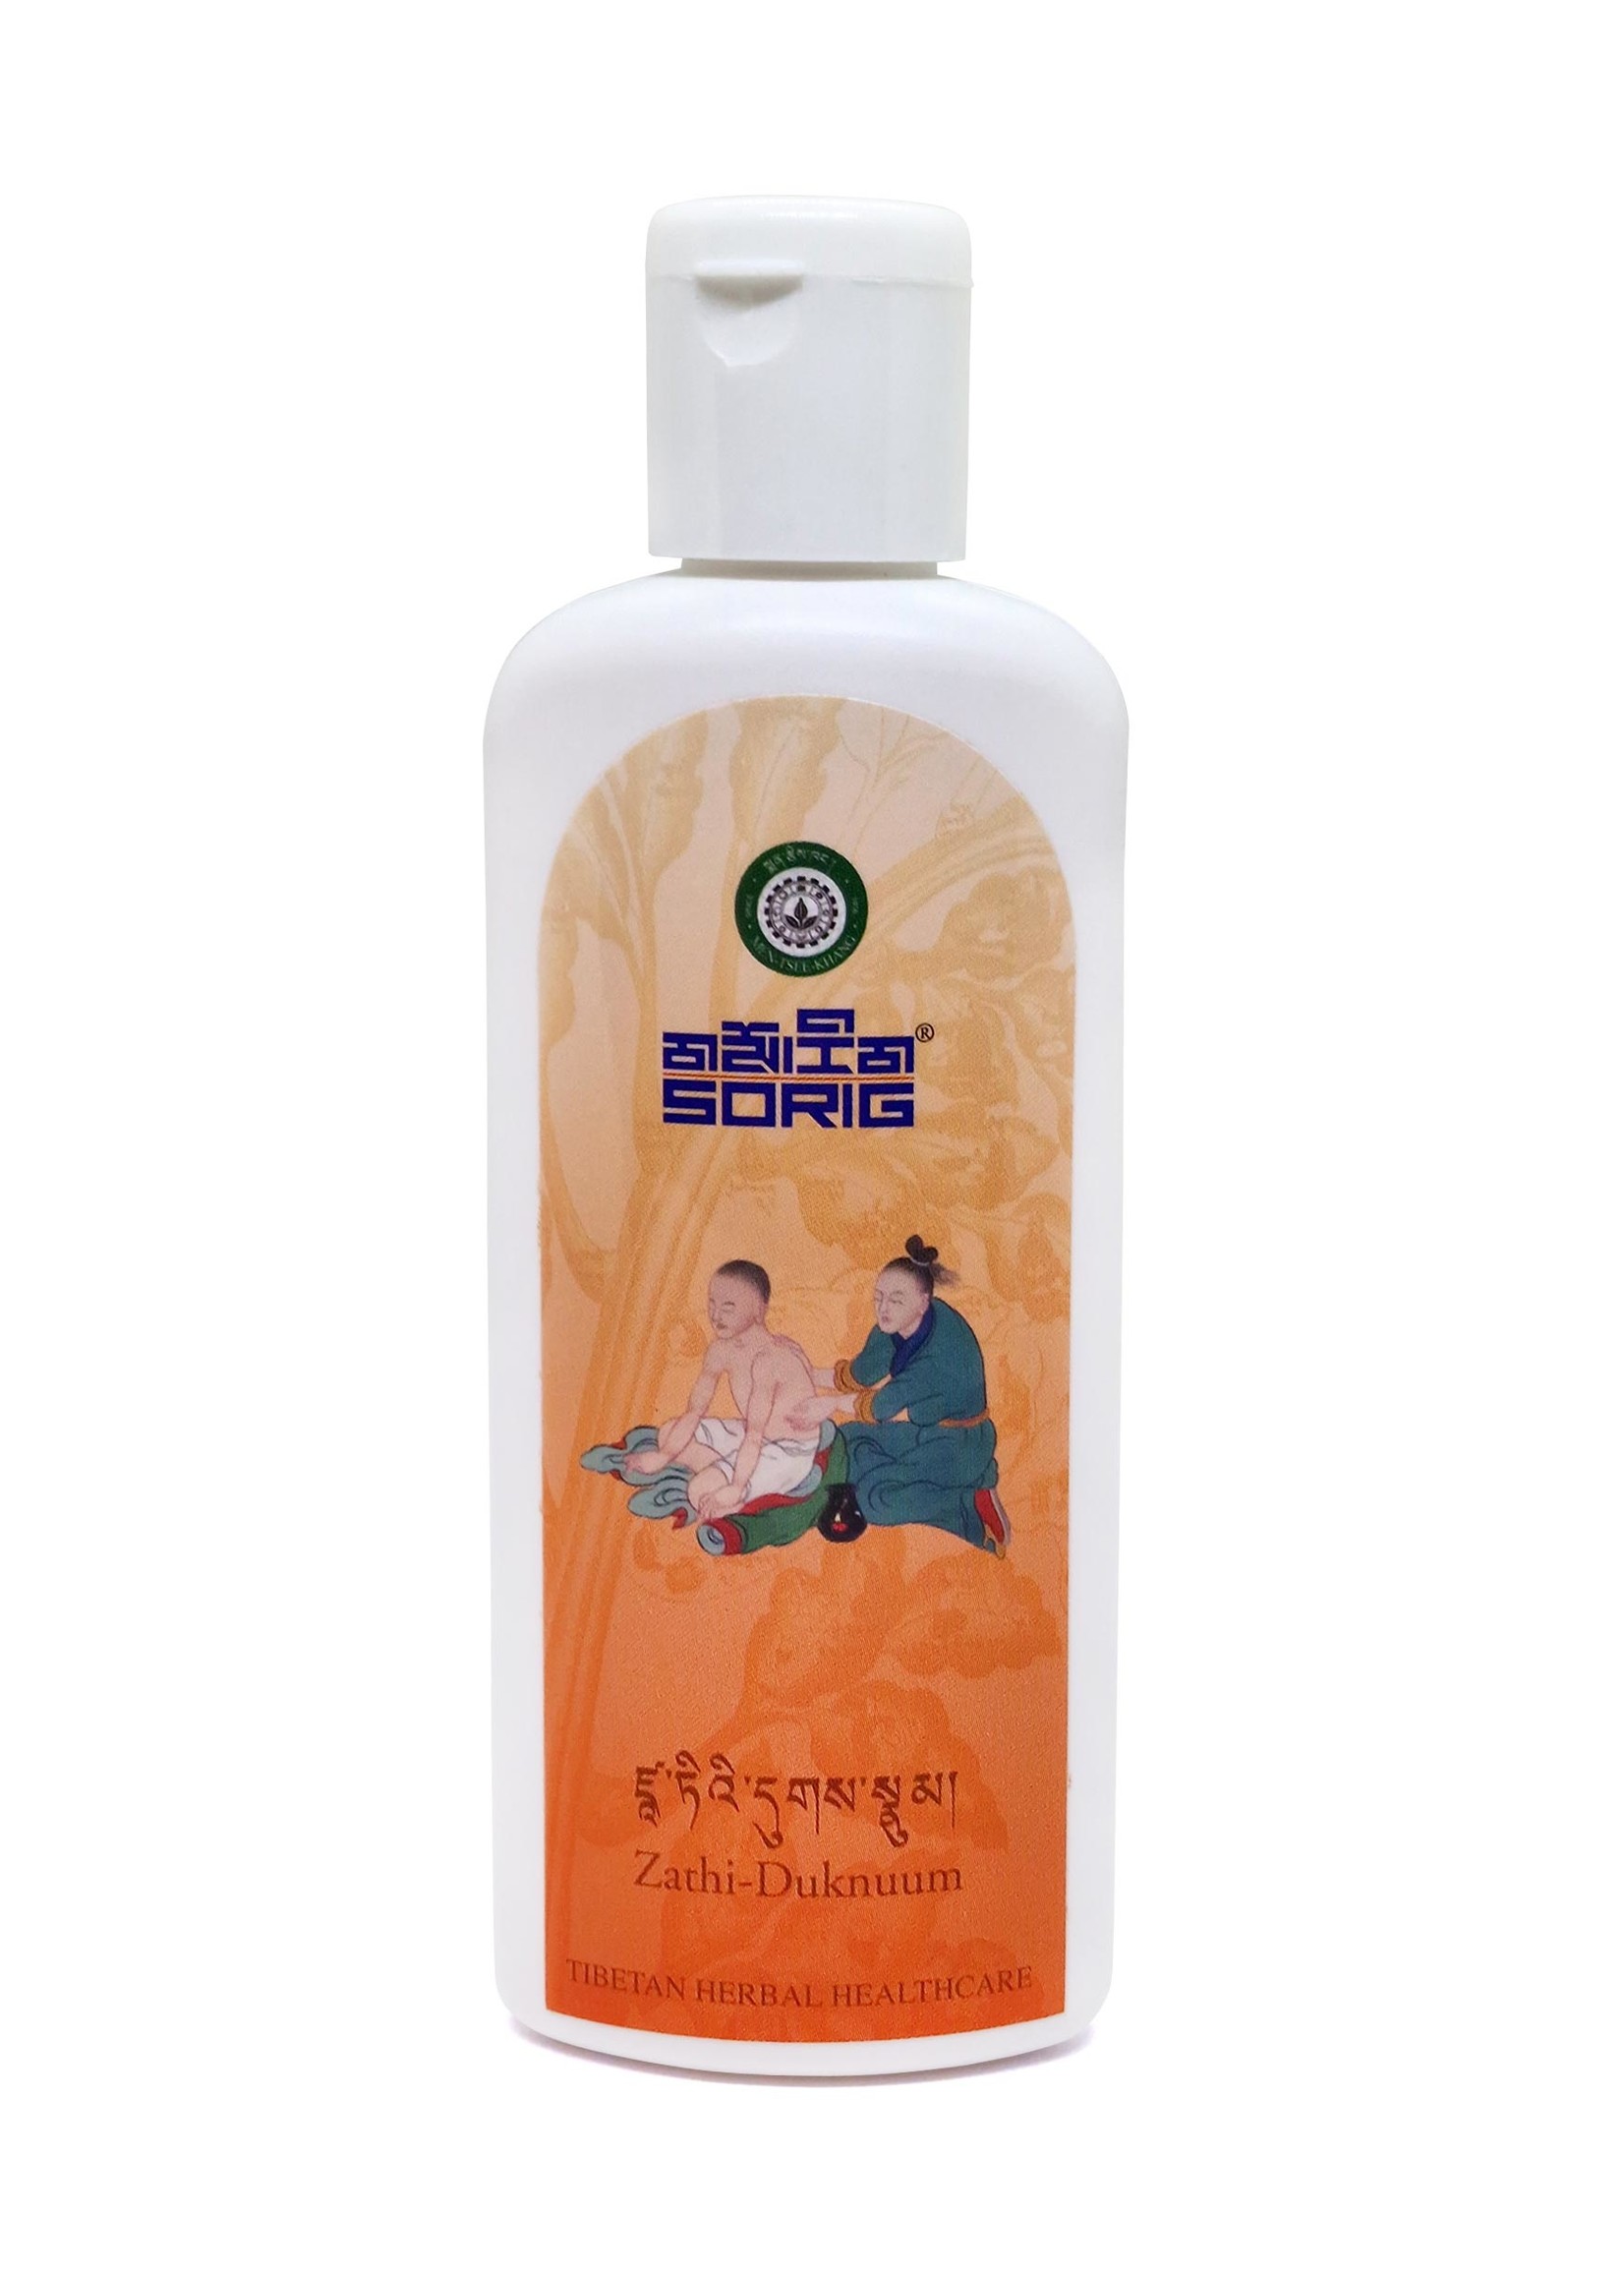 Tibetan Herbal Heat Compress Oil, 100 ml, Sorig Zathi-Duknuum